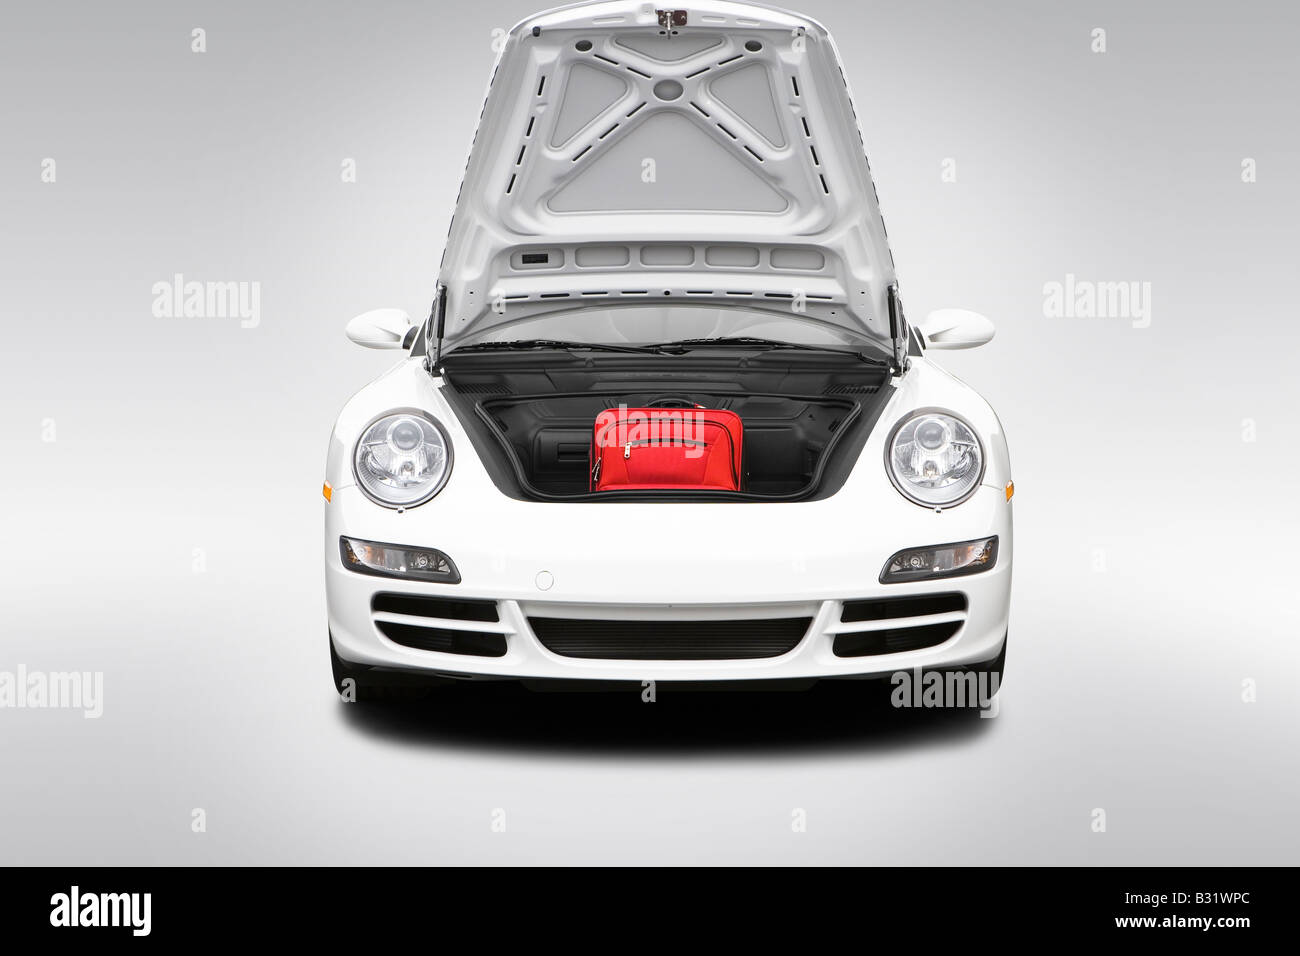 2008 Porsche 911 Carrera 4 s in weiß - Stamm Requisiten Stockfoto